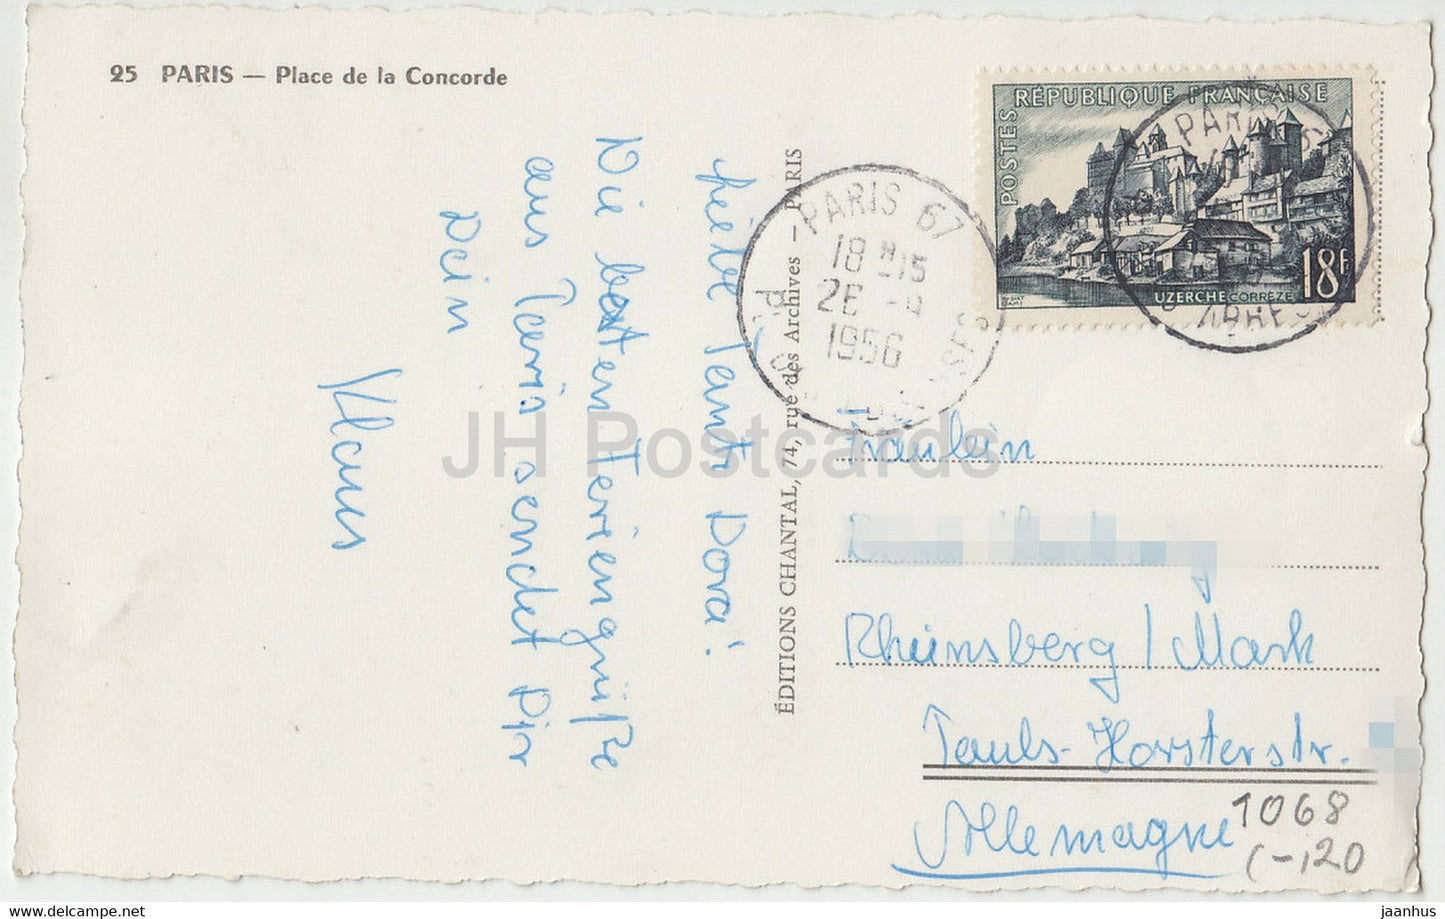 Paris – Place de la Concorde – Auto – Bus – 25 – alte Postkarte – 1956 – Frankreich – gebraucht